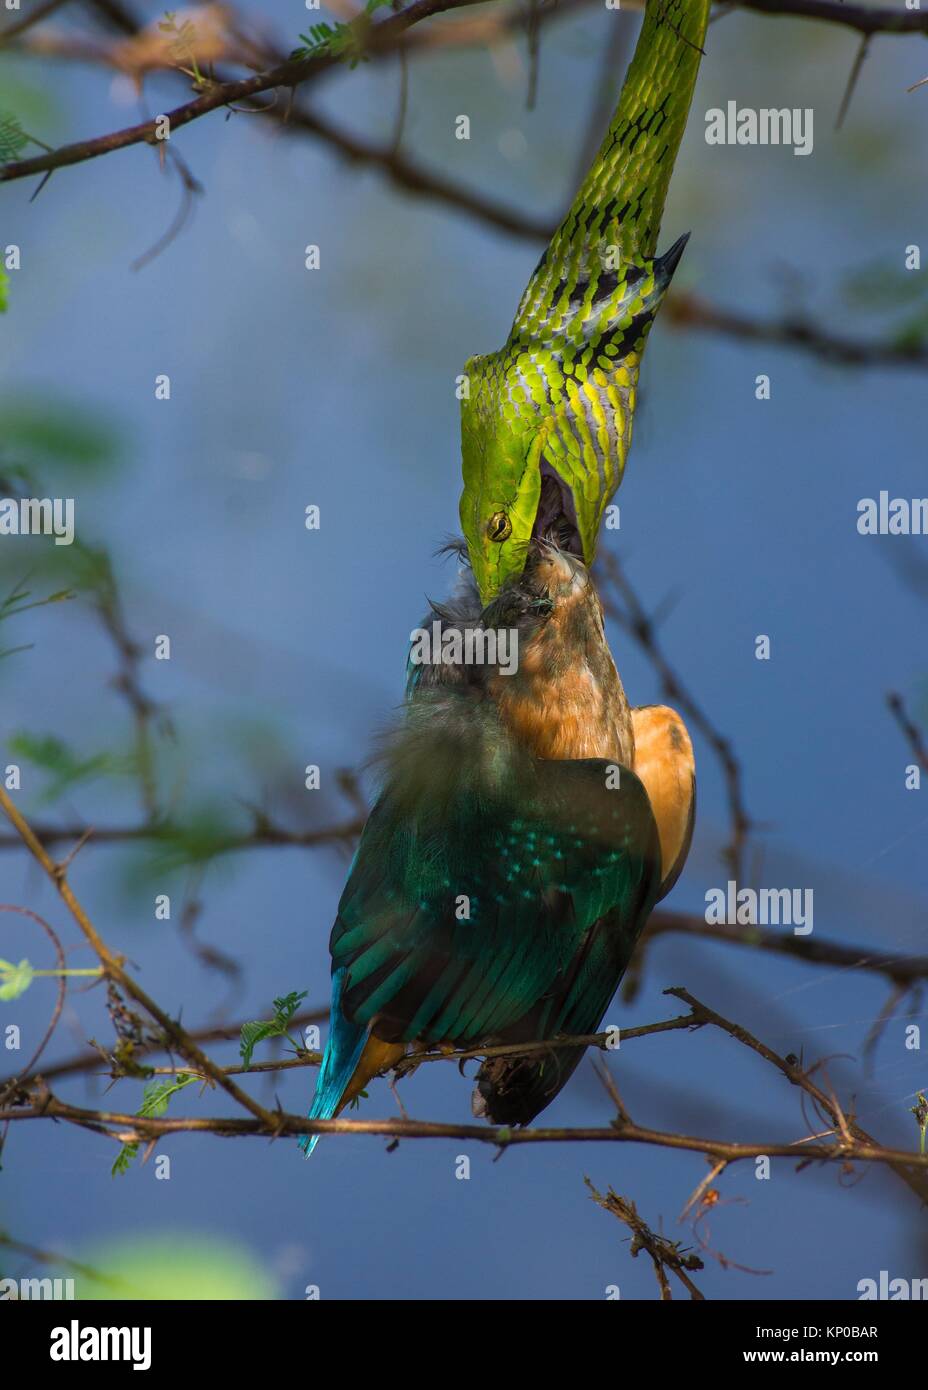 Vid verde serpiente de victimizar a los pequeños kingfisher, mientras que el pico del pájaro perforado la piel de la serpiente. Foto de stock